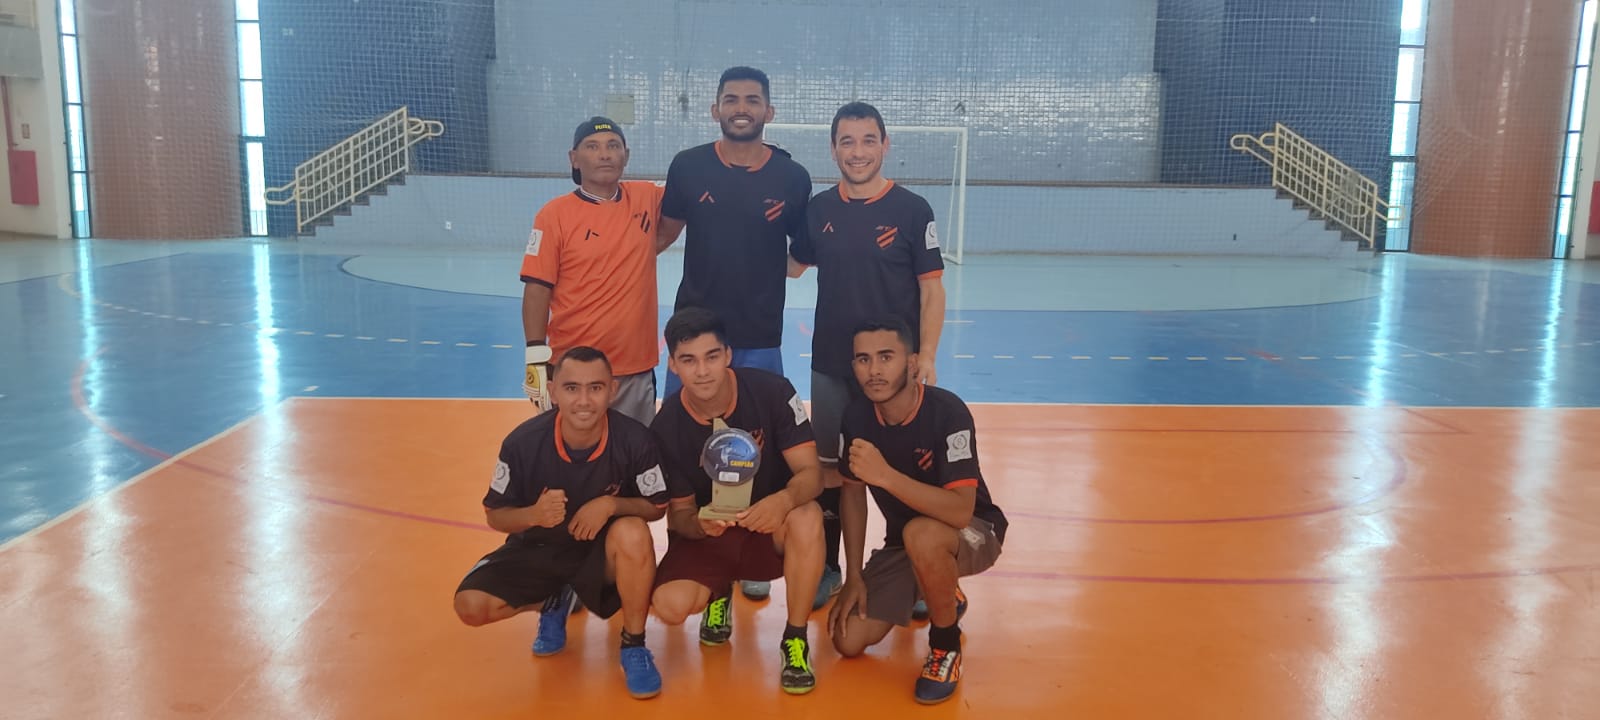 Torneio de futsal promove confraternização entre servidores da Prefeitura de Mossoró